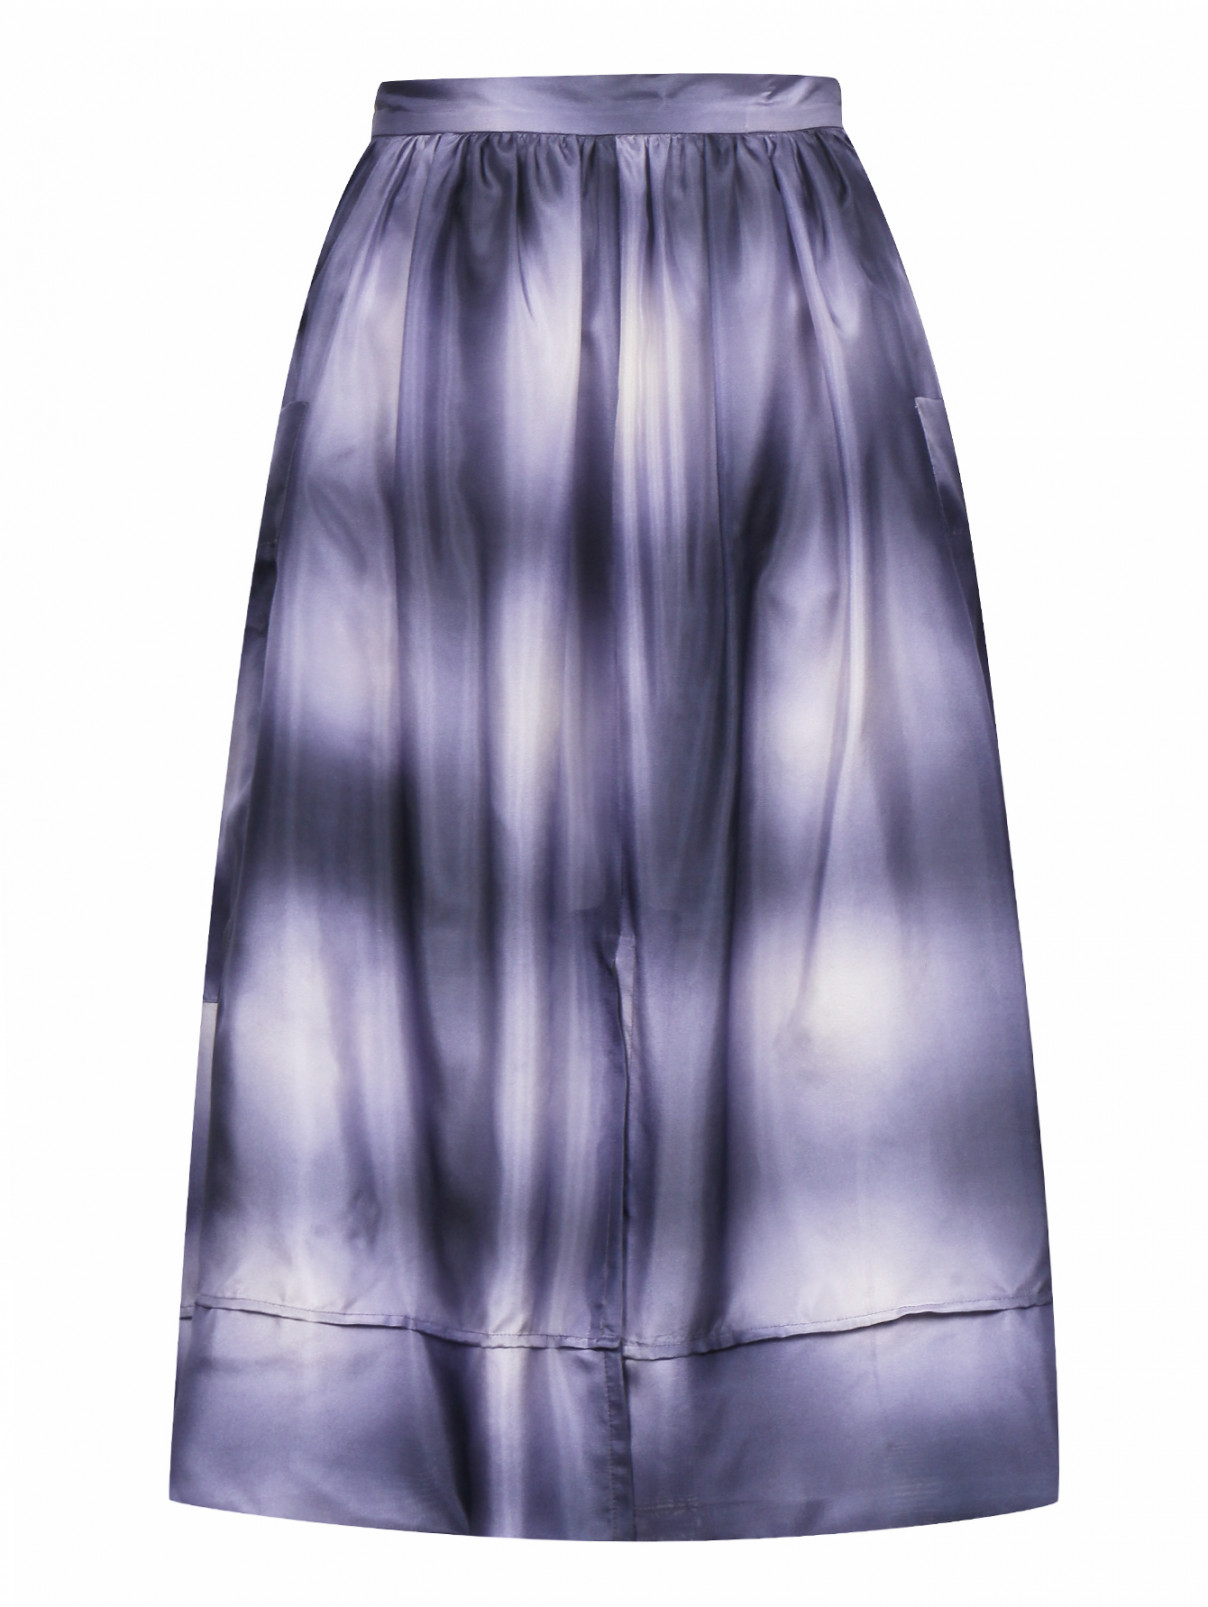 Юбка из шелка с боковыми карманами Sonia Rykiel  –  Общий вид  – Цвет:  Фиолетовый